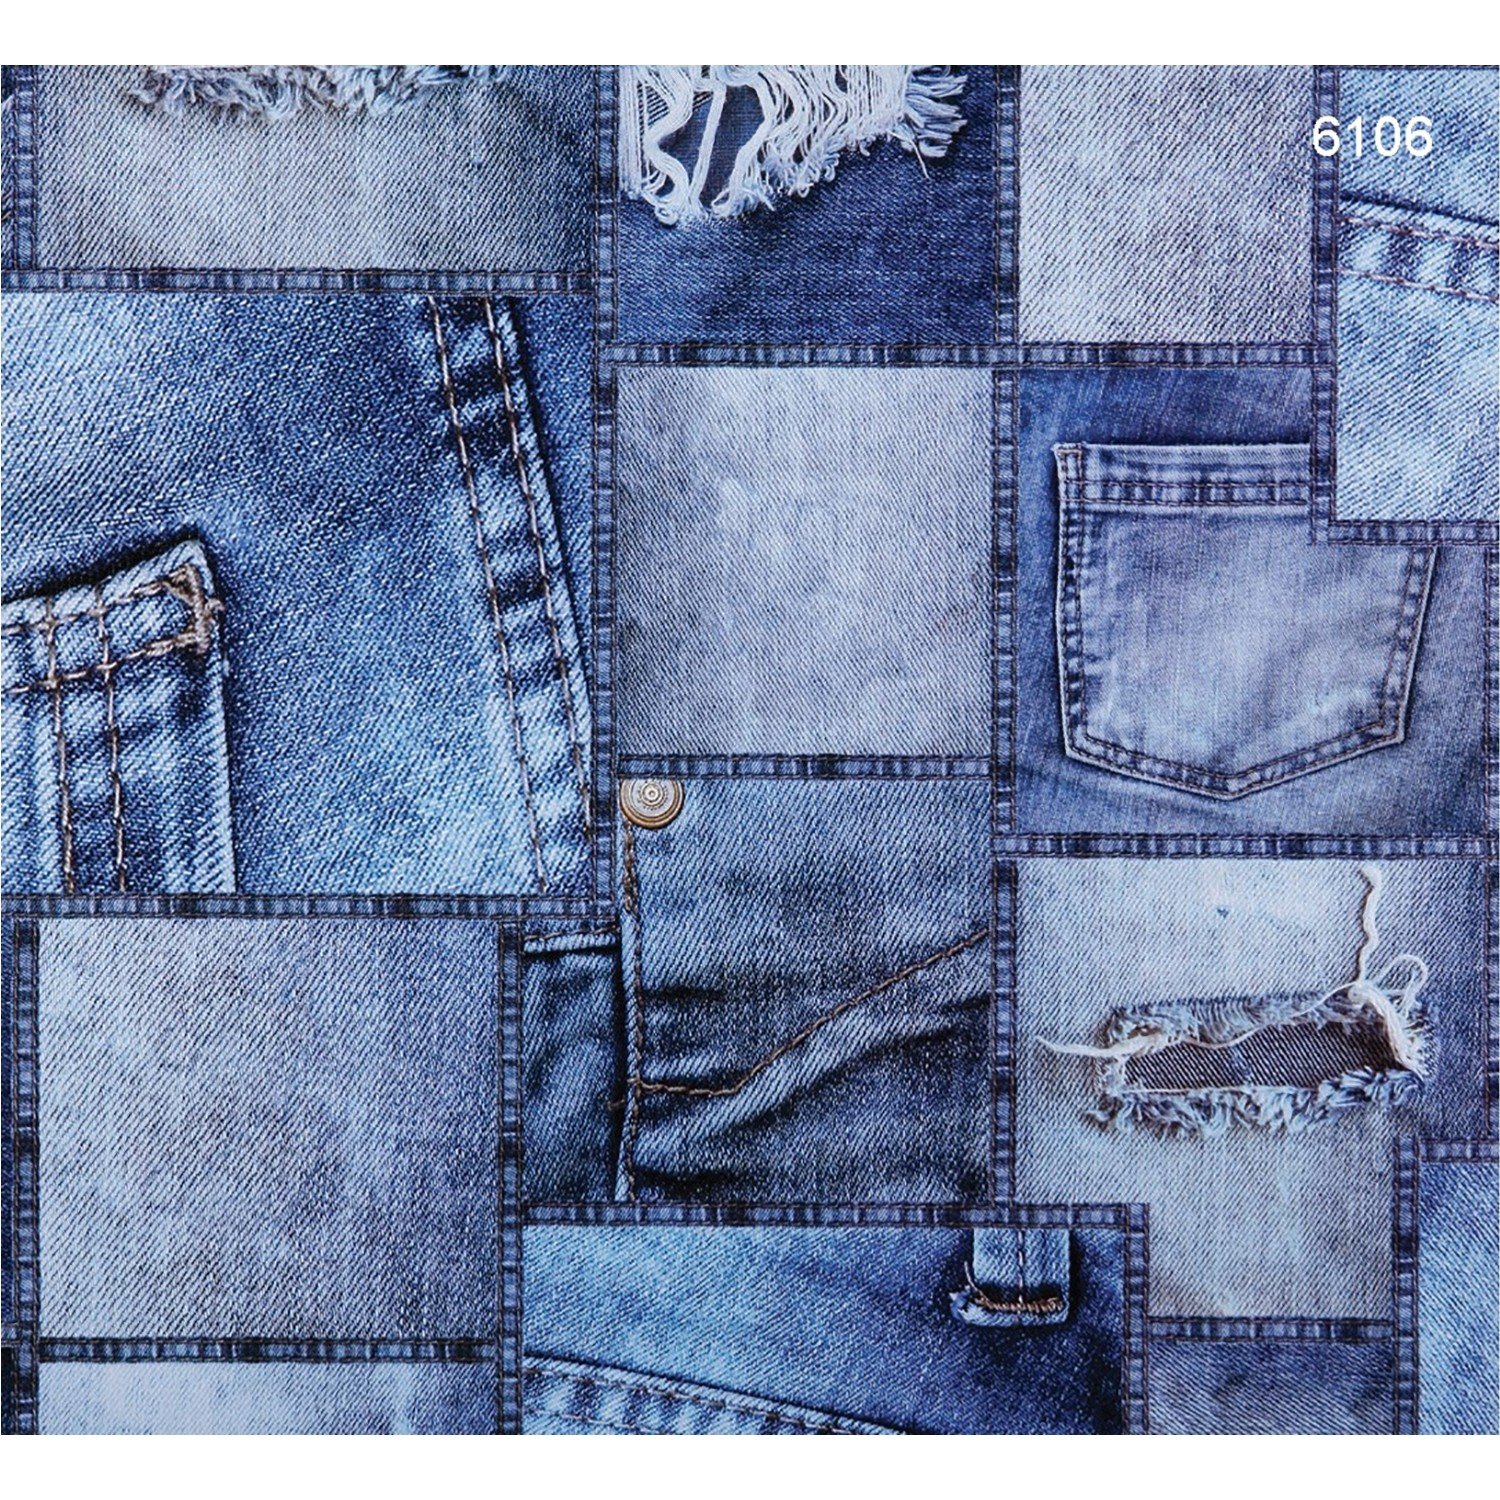 Джинсовый принт. Джинсовая ткань. Фактура джинсовой ткани. Материал джинс. Рваная джинсовая ткань.